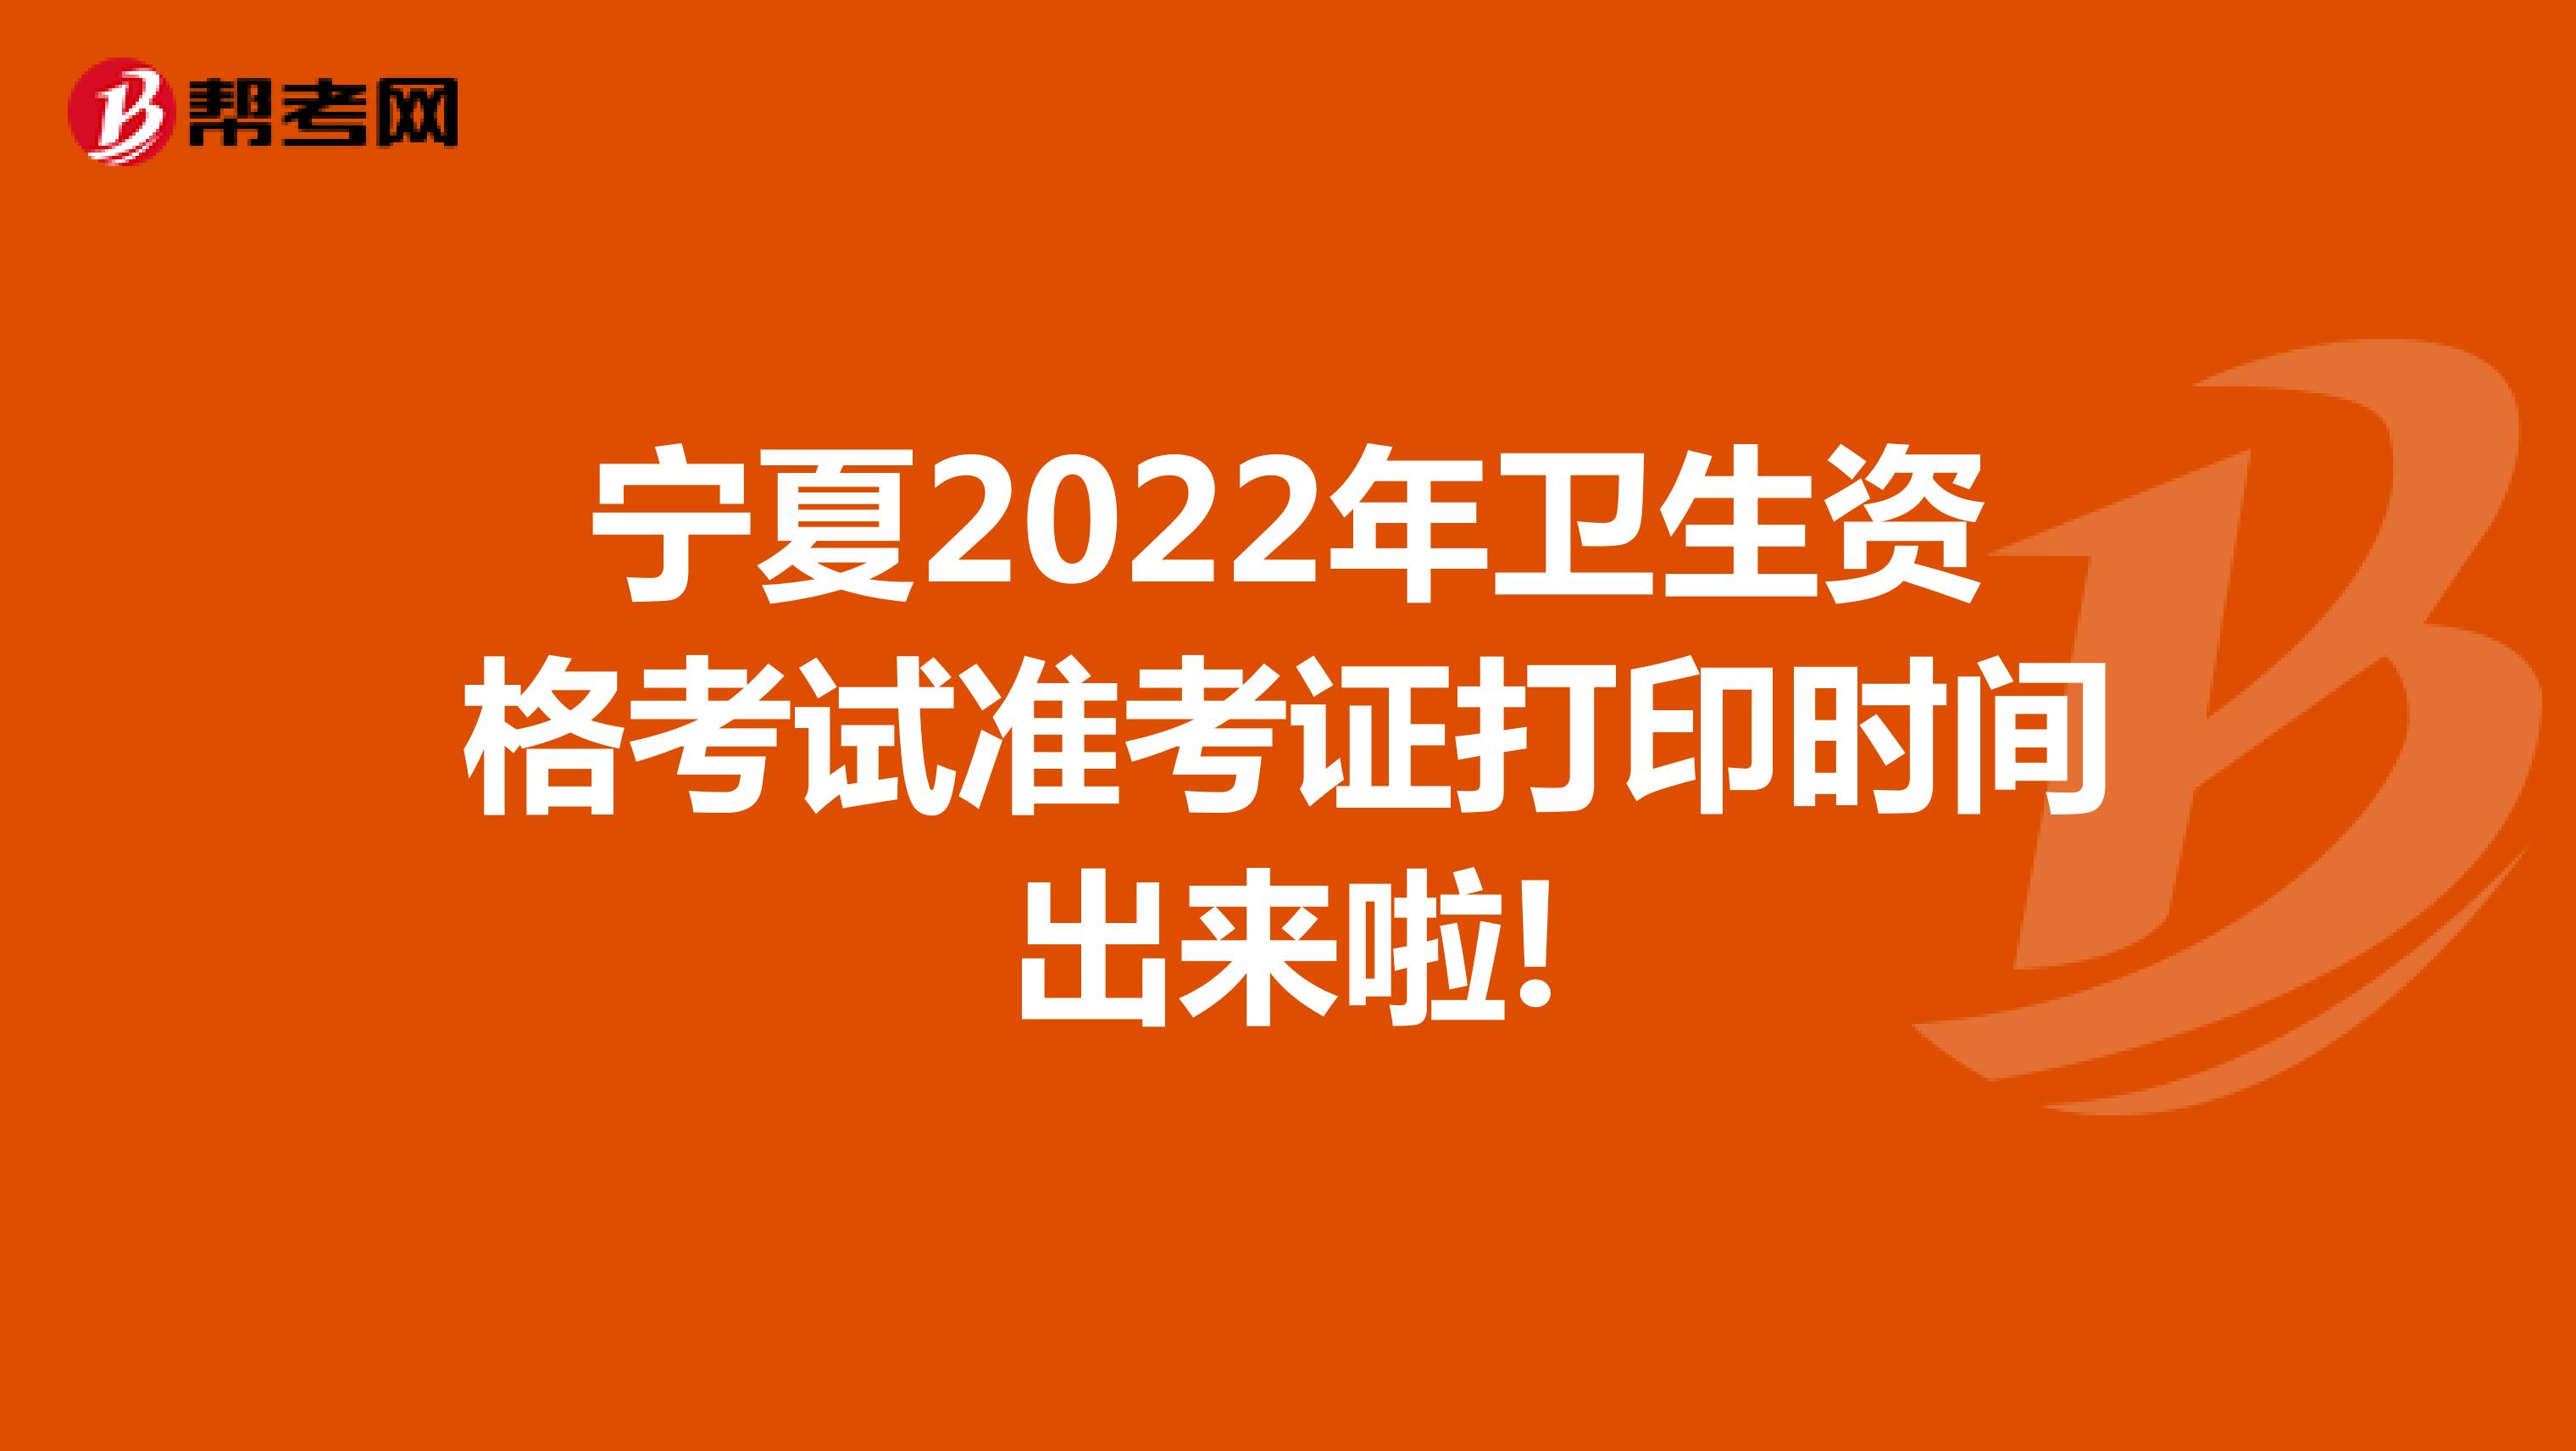 宁夏2022年卫生资格考试准考证打印时间出来啦!